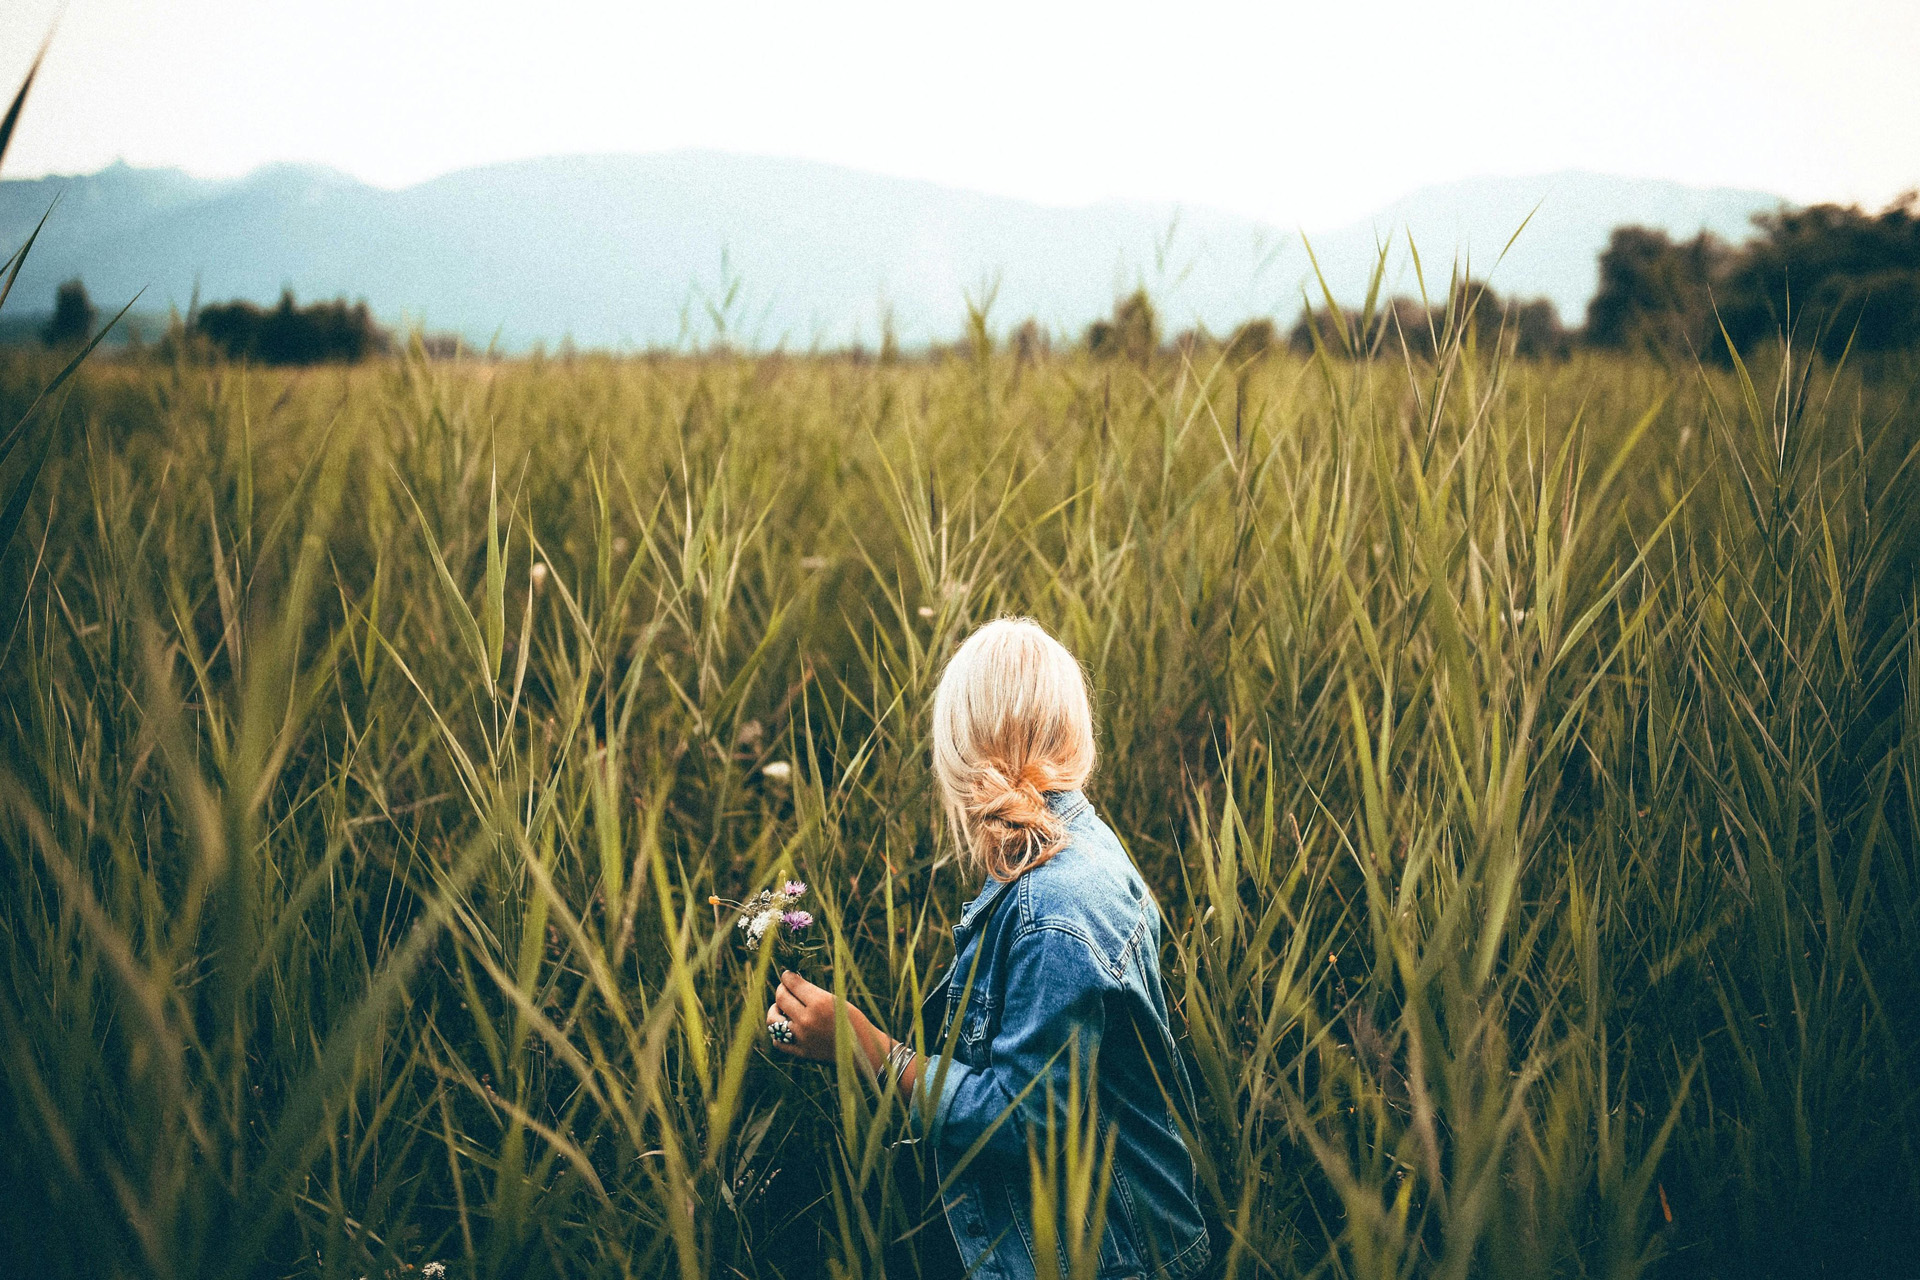 A Blonde woman in a field